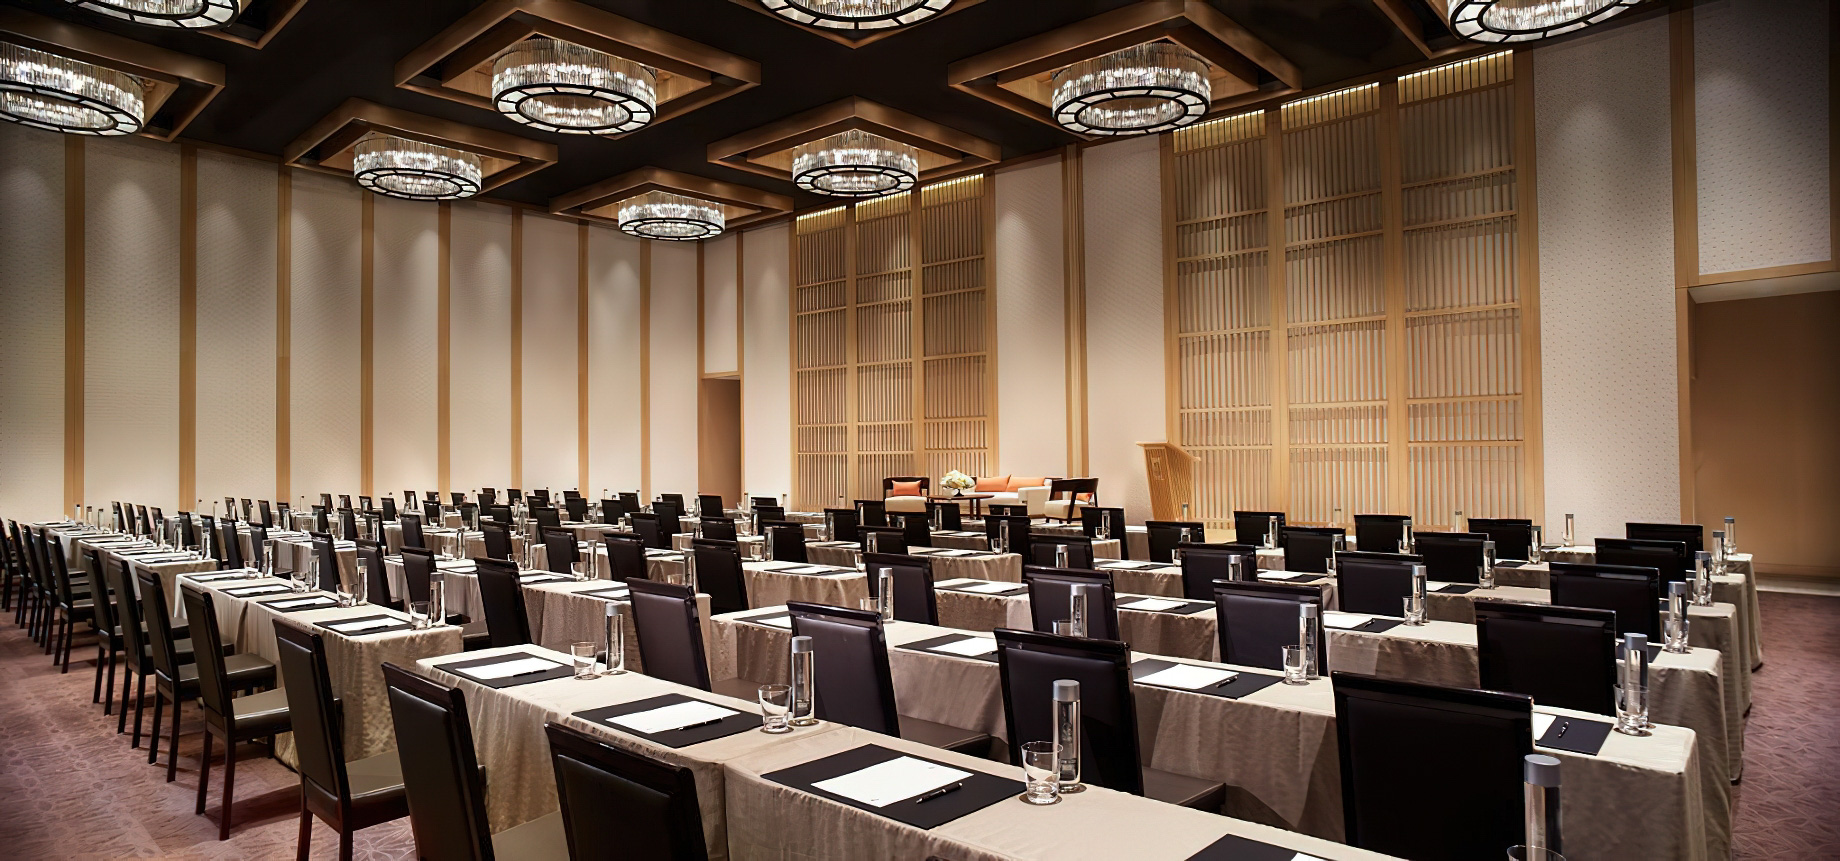 The Ritz-Carlton, Kyoto Hotel – Nakagyo Ward, Kyoto, Japan – Banquet Room Classroom Setup